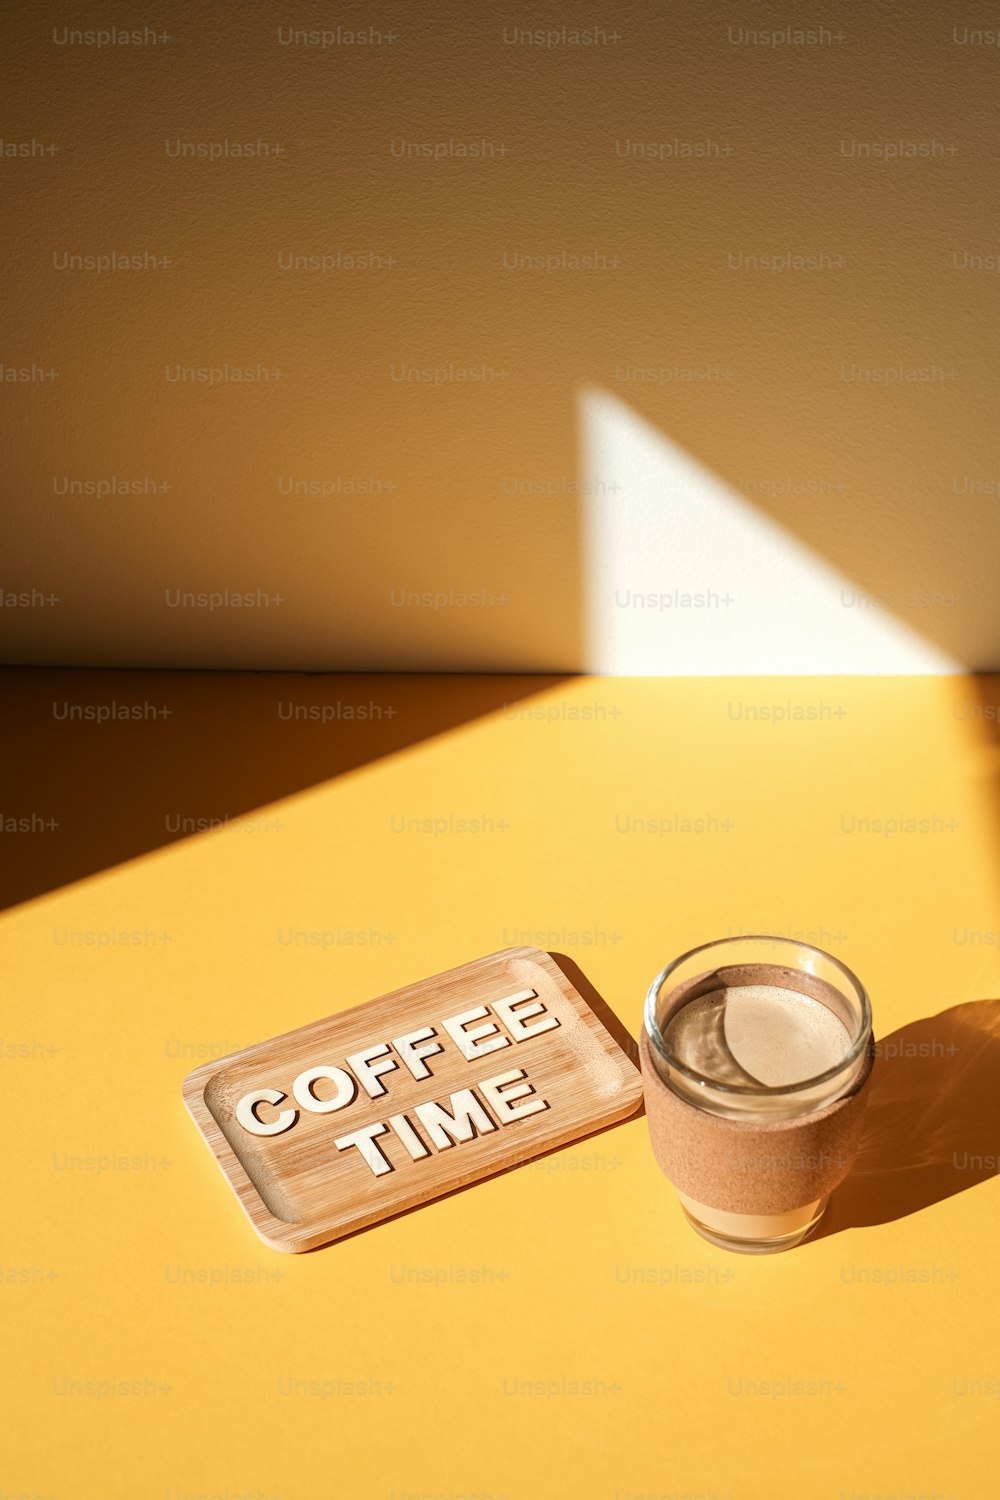 コーヒータイムと書かれた看板の横にある一杯のコーヒー